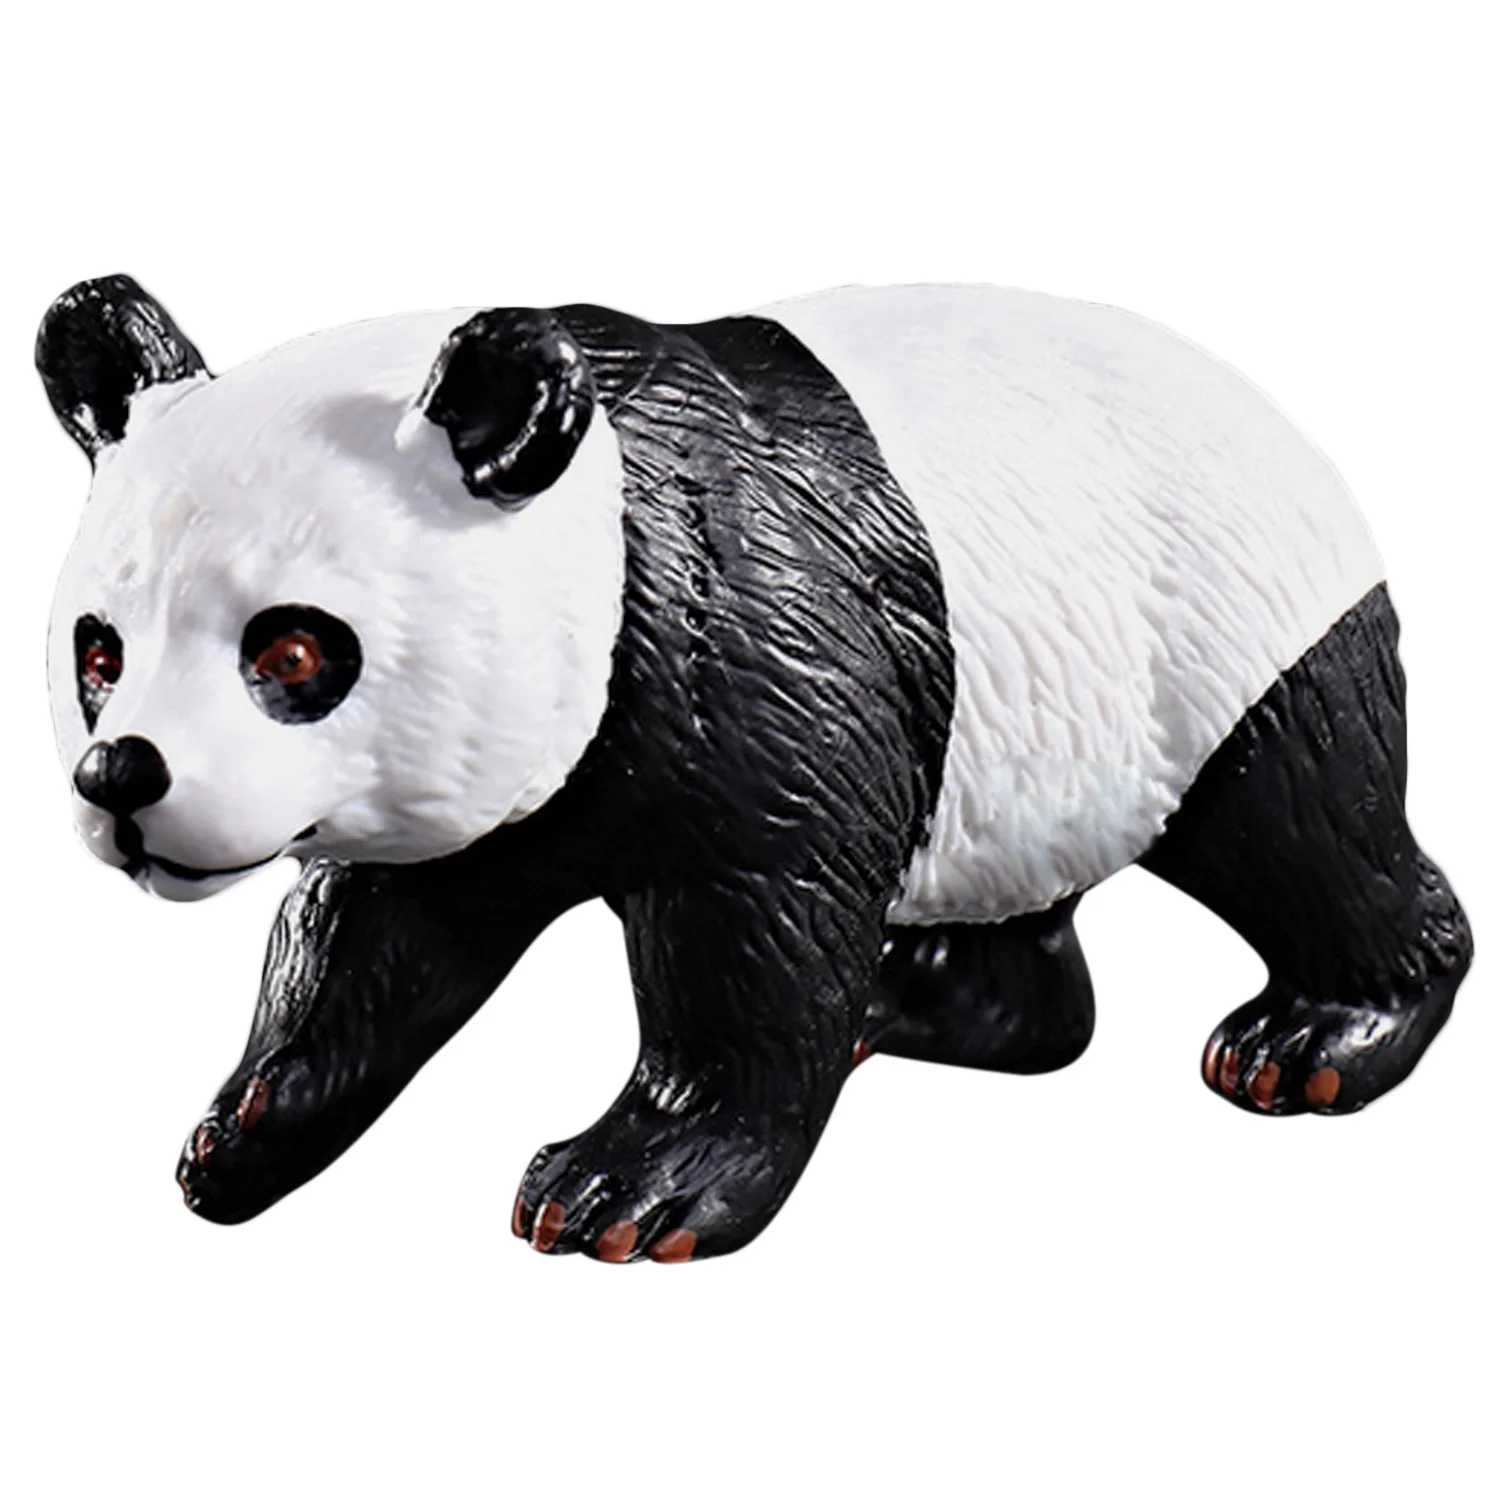 Детские Мини-симуляторы, реалистичные пластиковые животные, животные, панда, жираф, орангутан, коала, лебедь, модели, фигурки, развивающие игрушки - Цвет: Panda